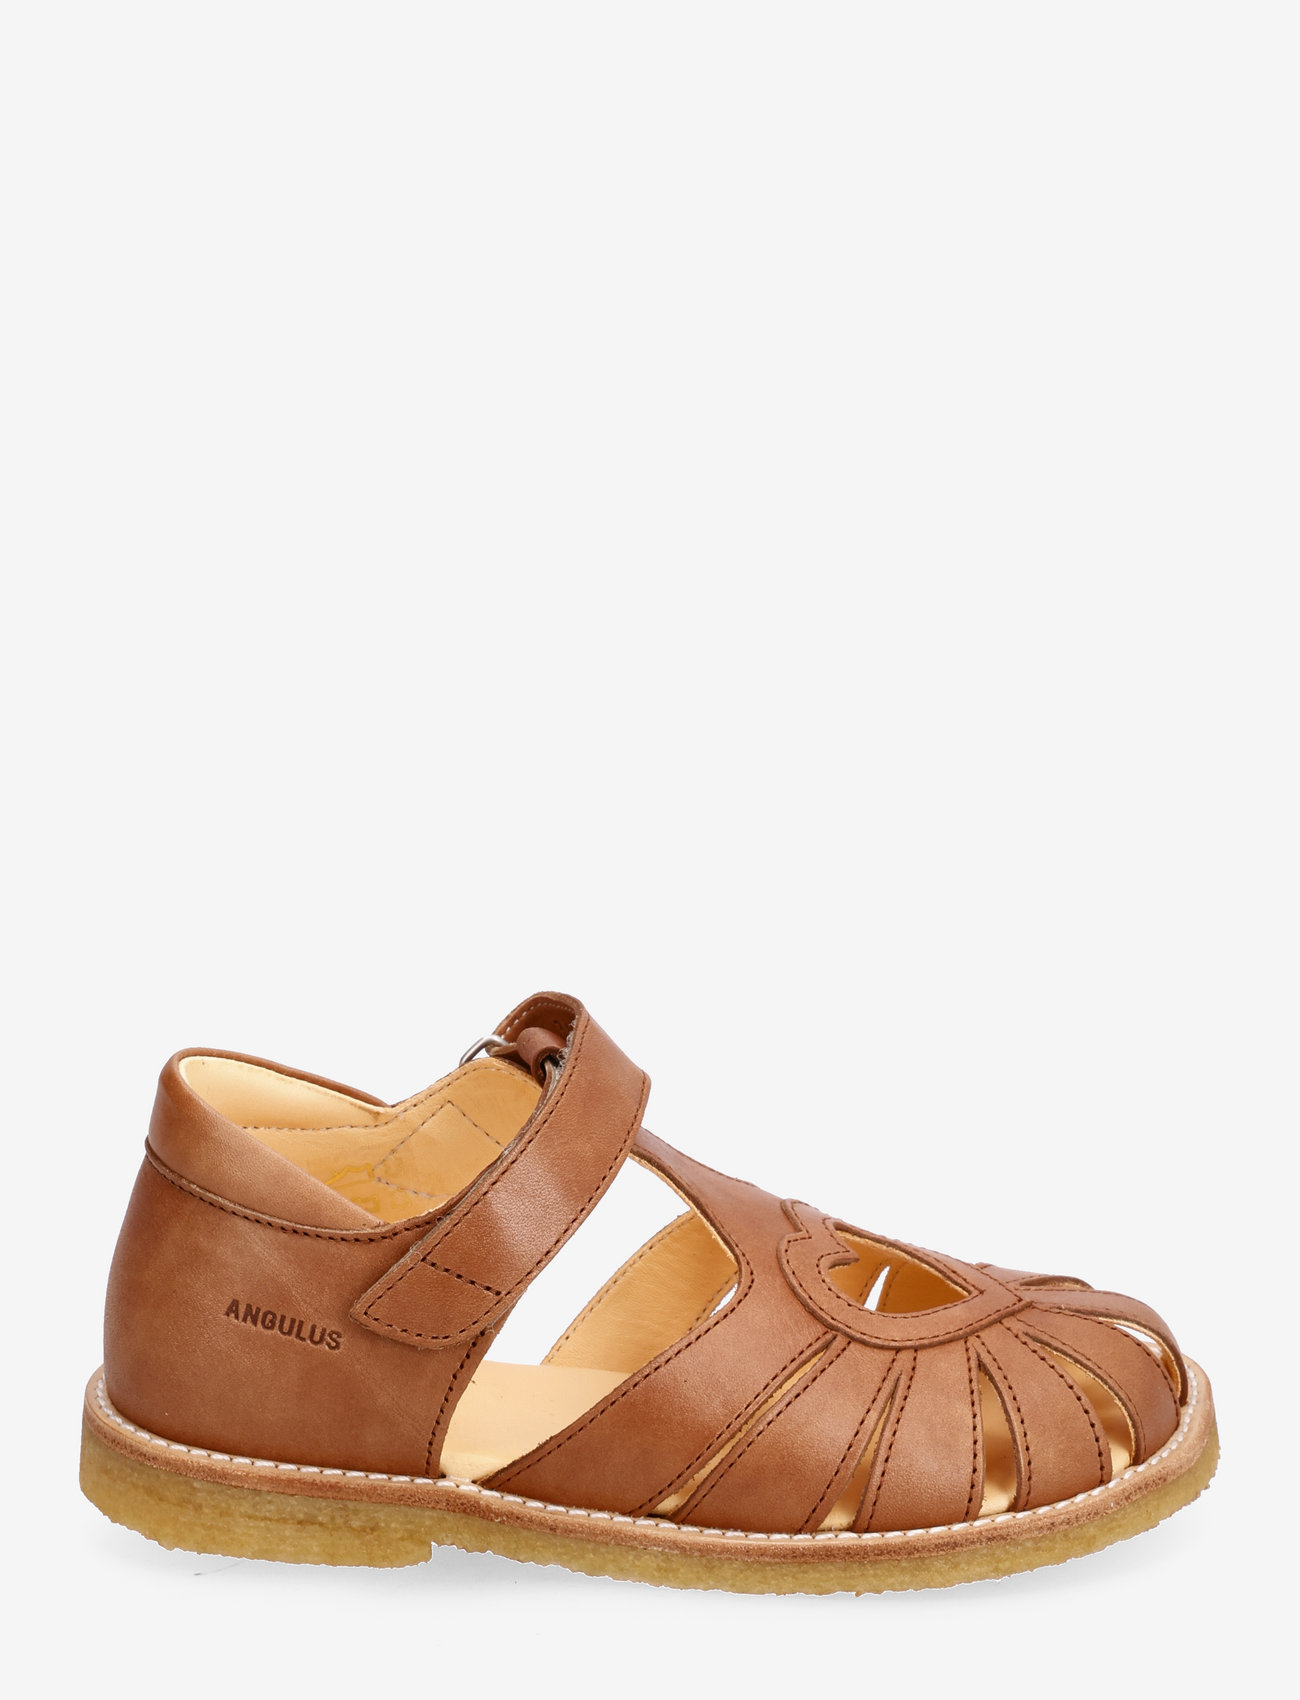 ANGULUS - Sandals - flat - closed toe - - summer savings - 1789 tan - 1